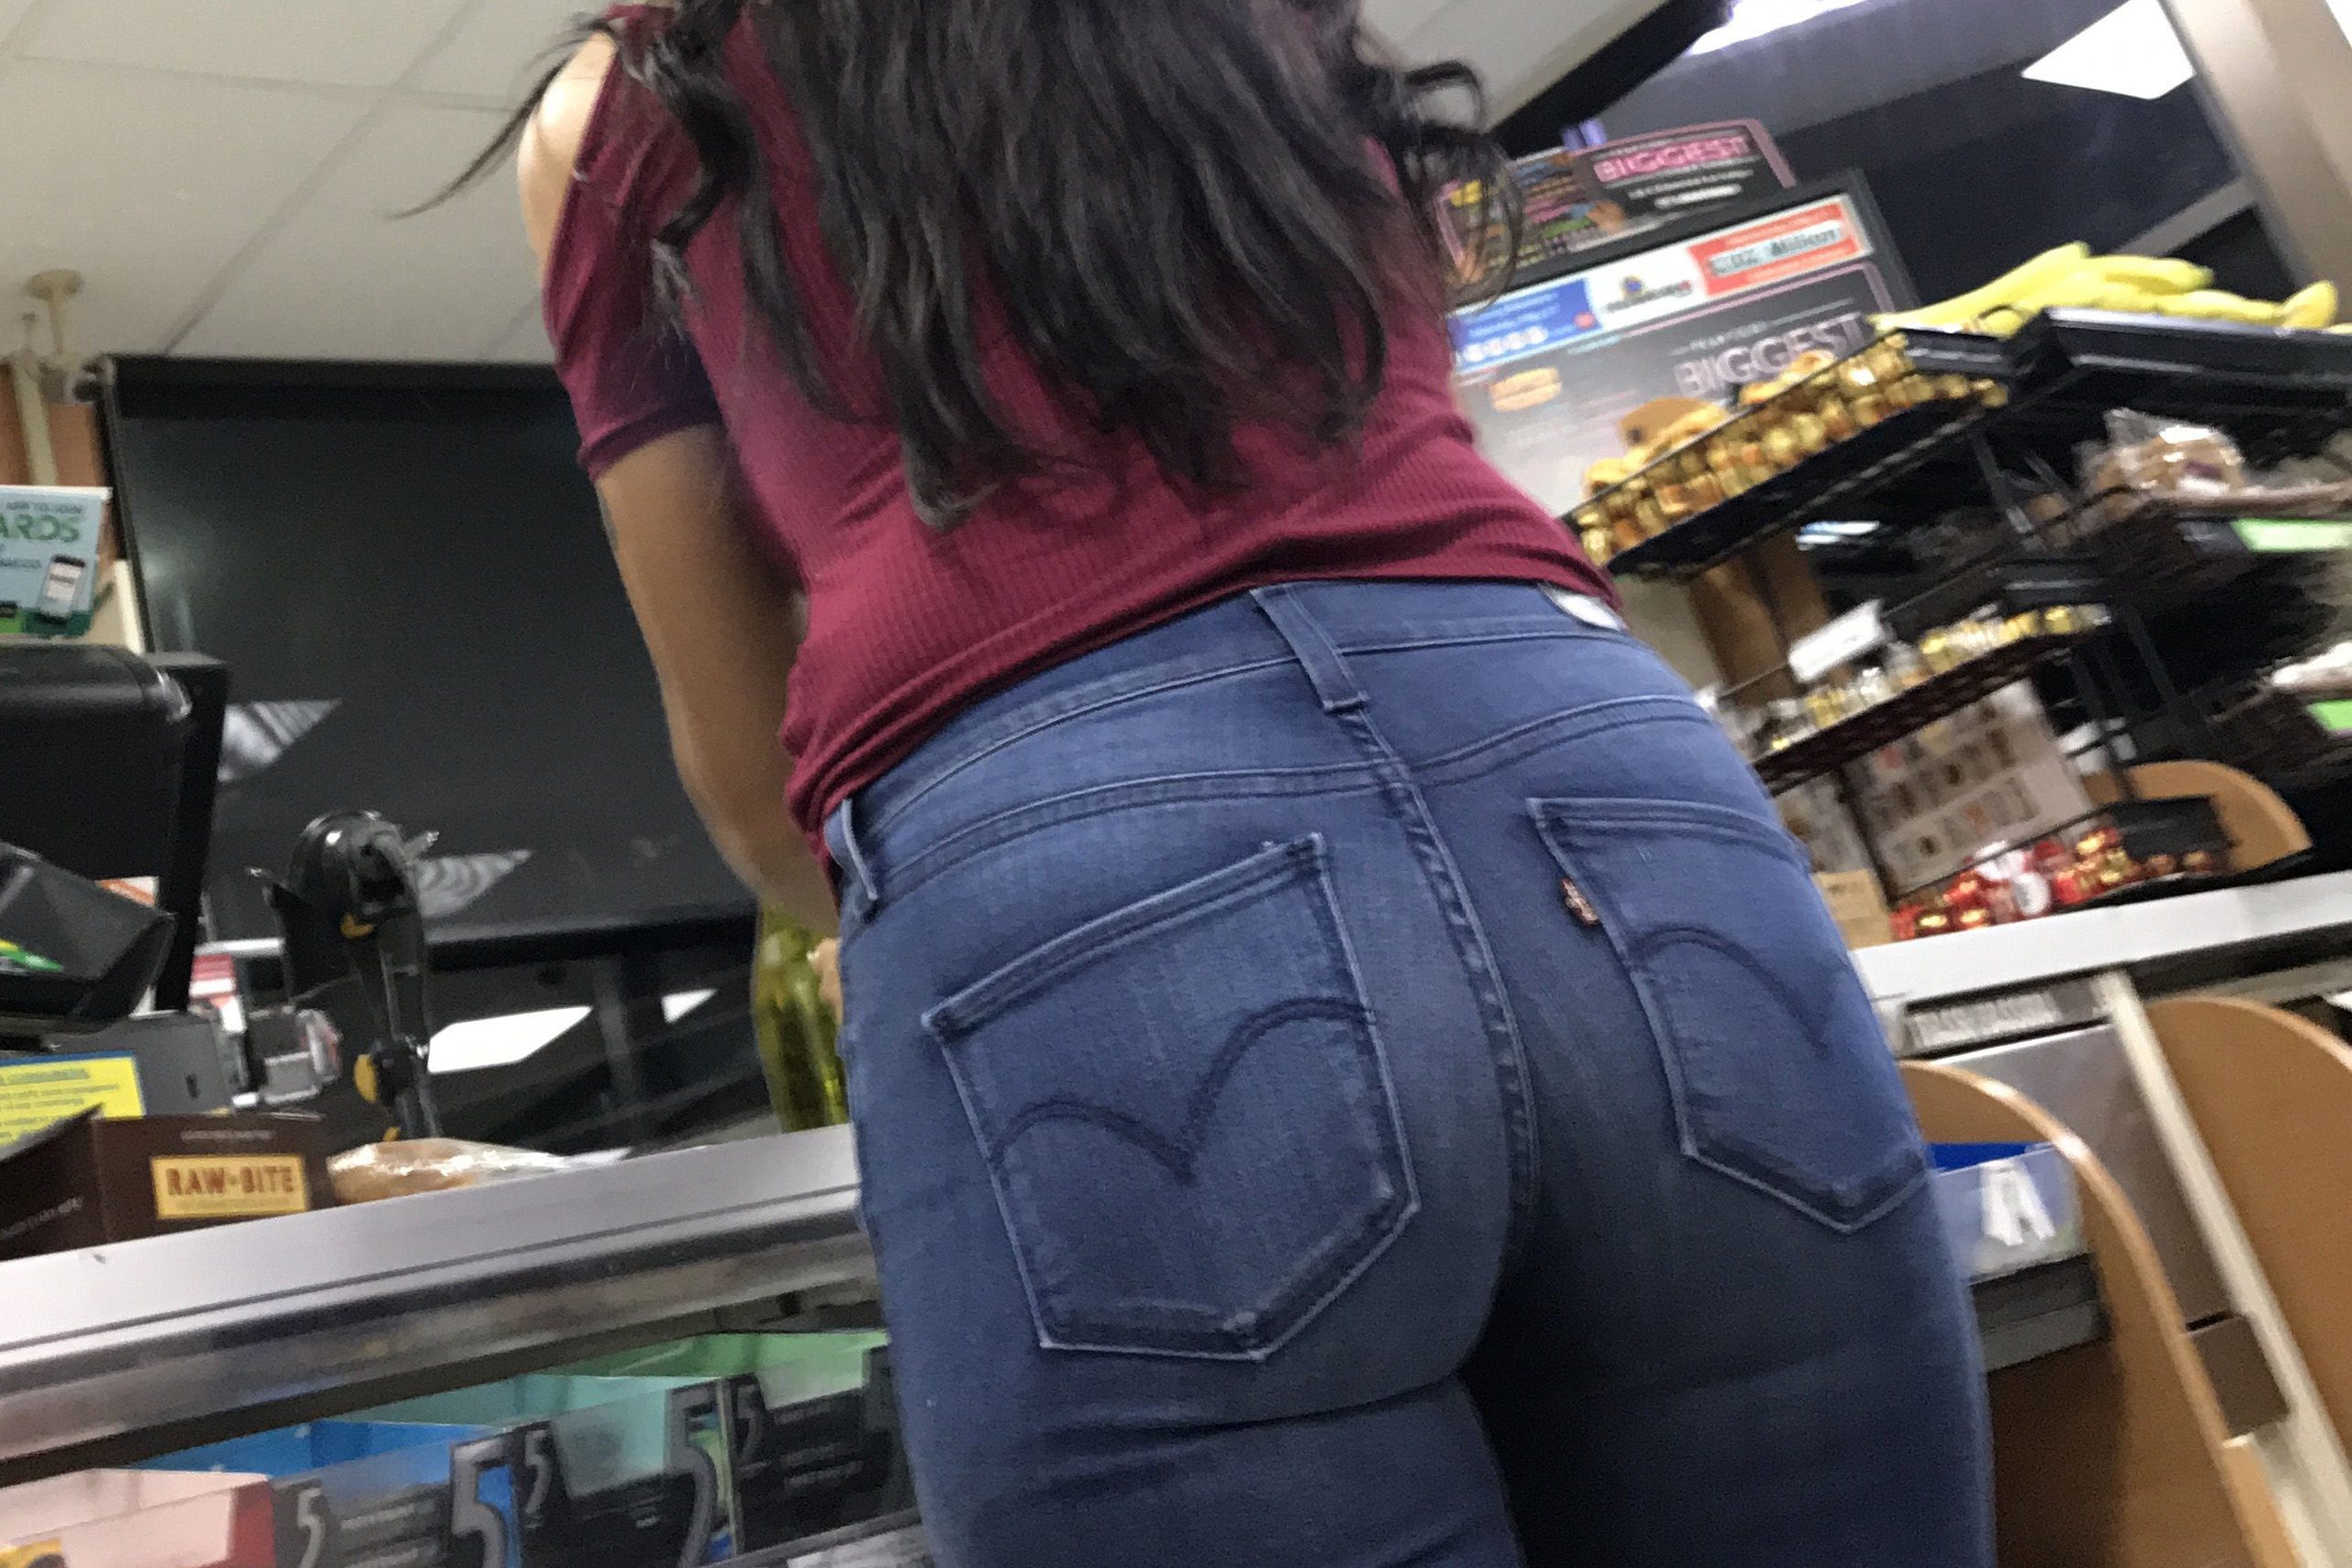 Candid bubble butt jeans fan image